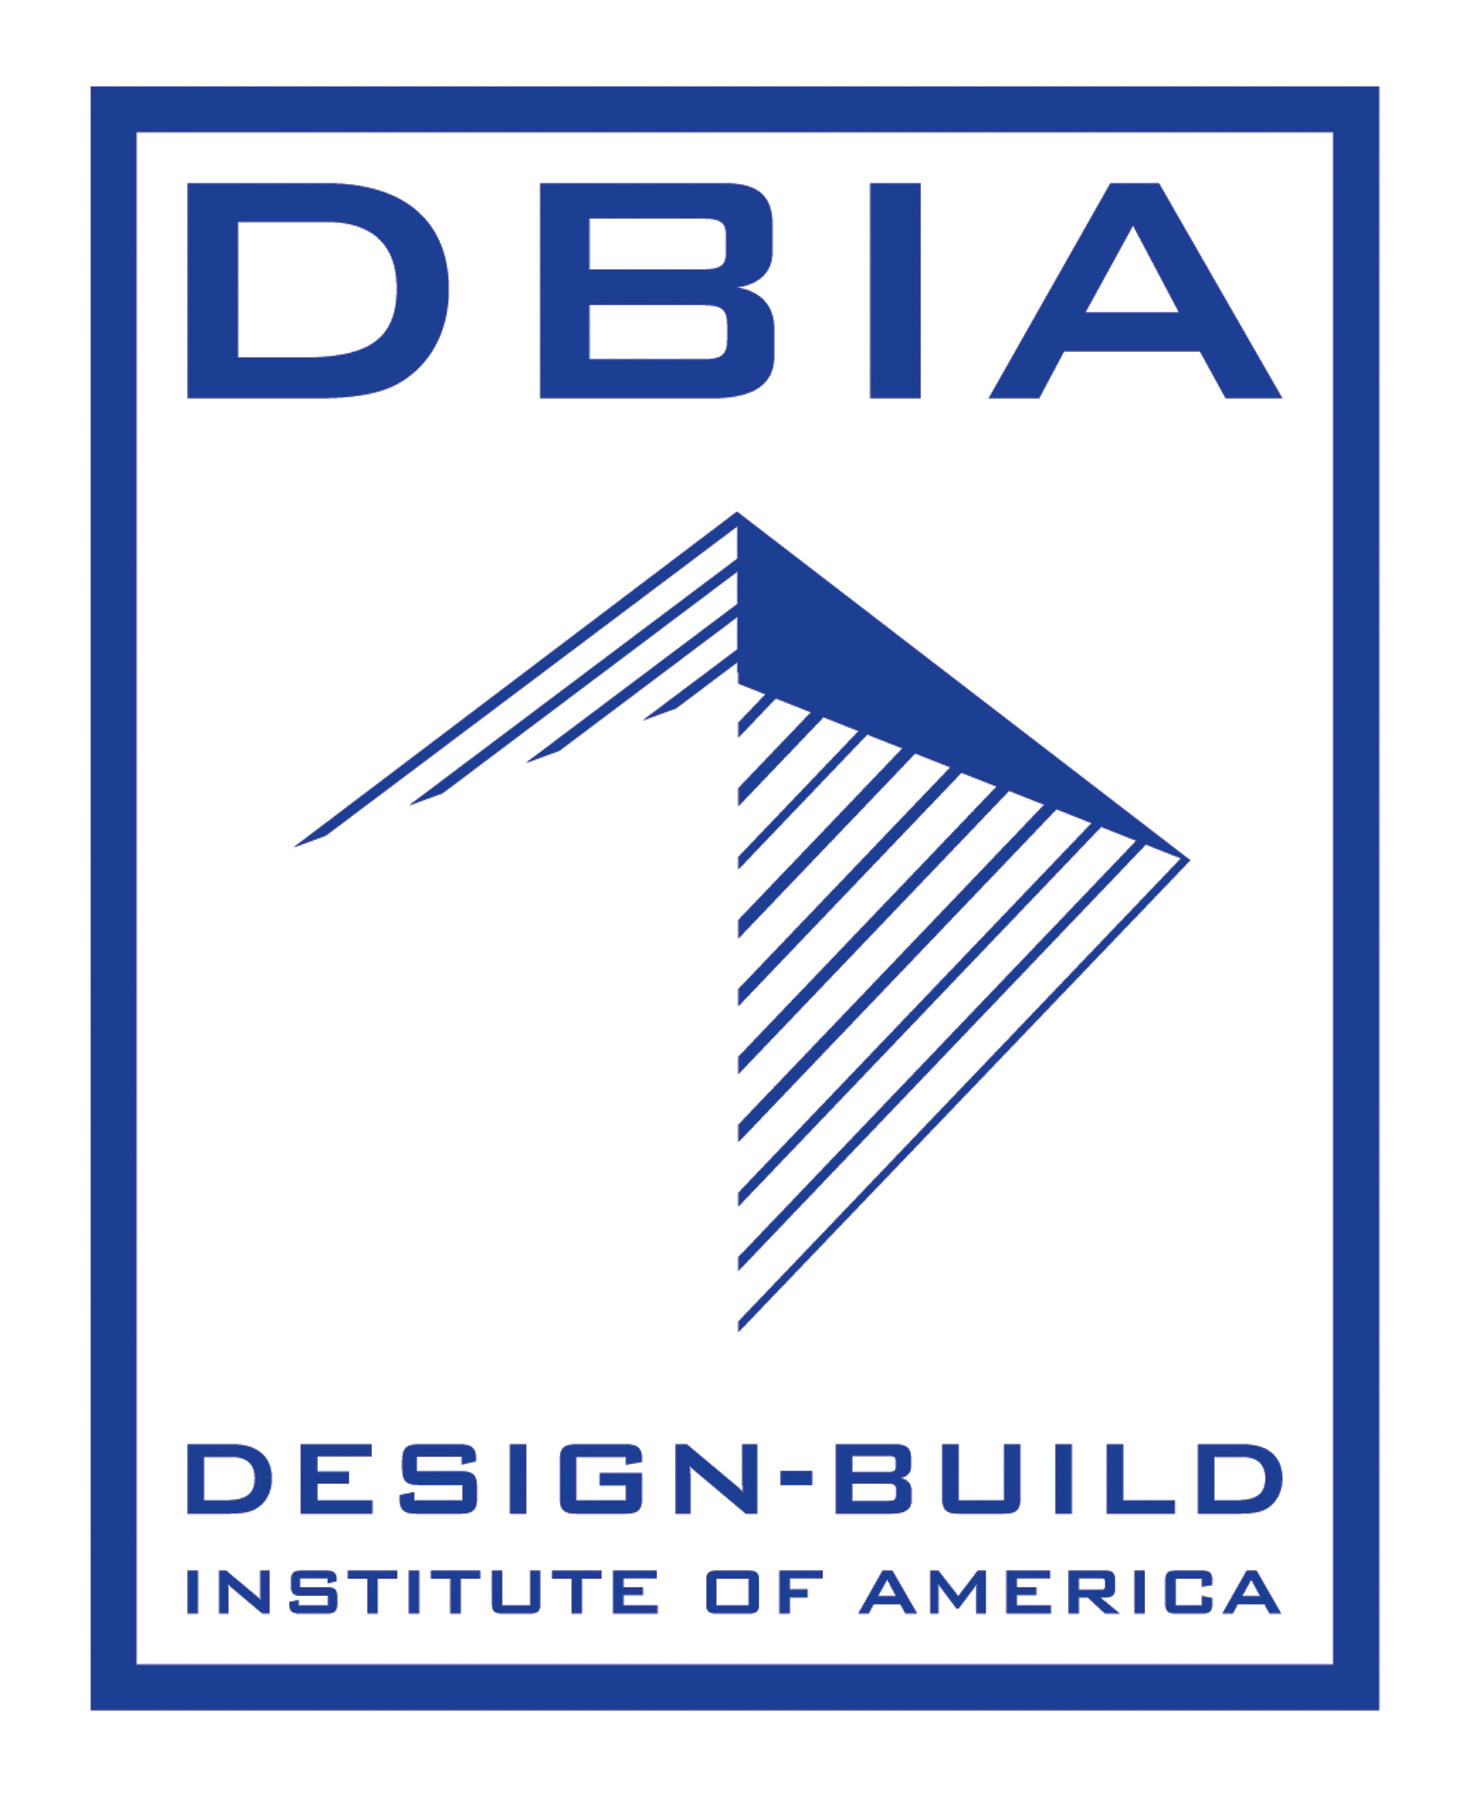 Design-Build Institute of America (DBIA)